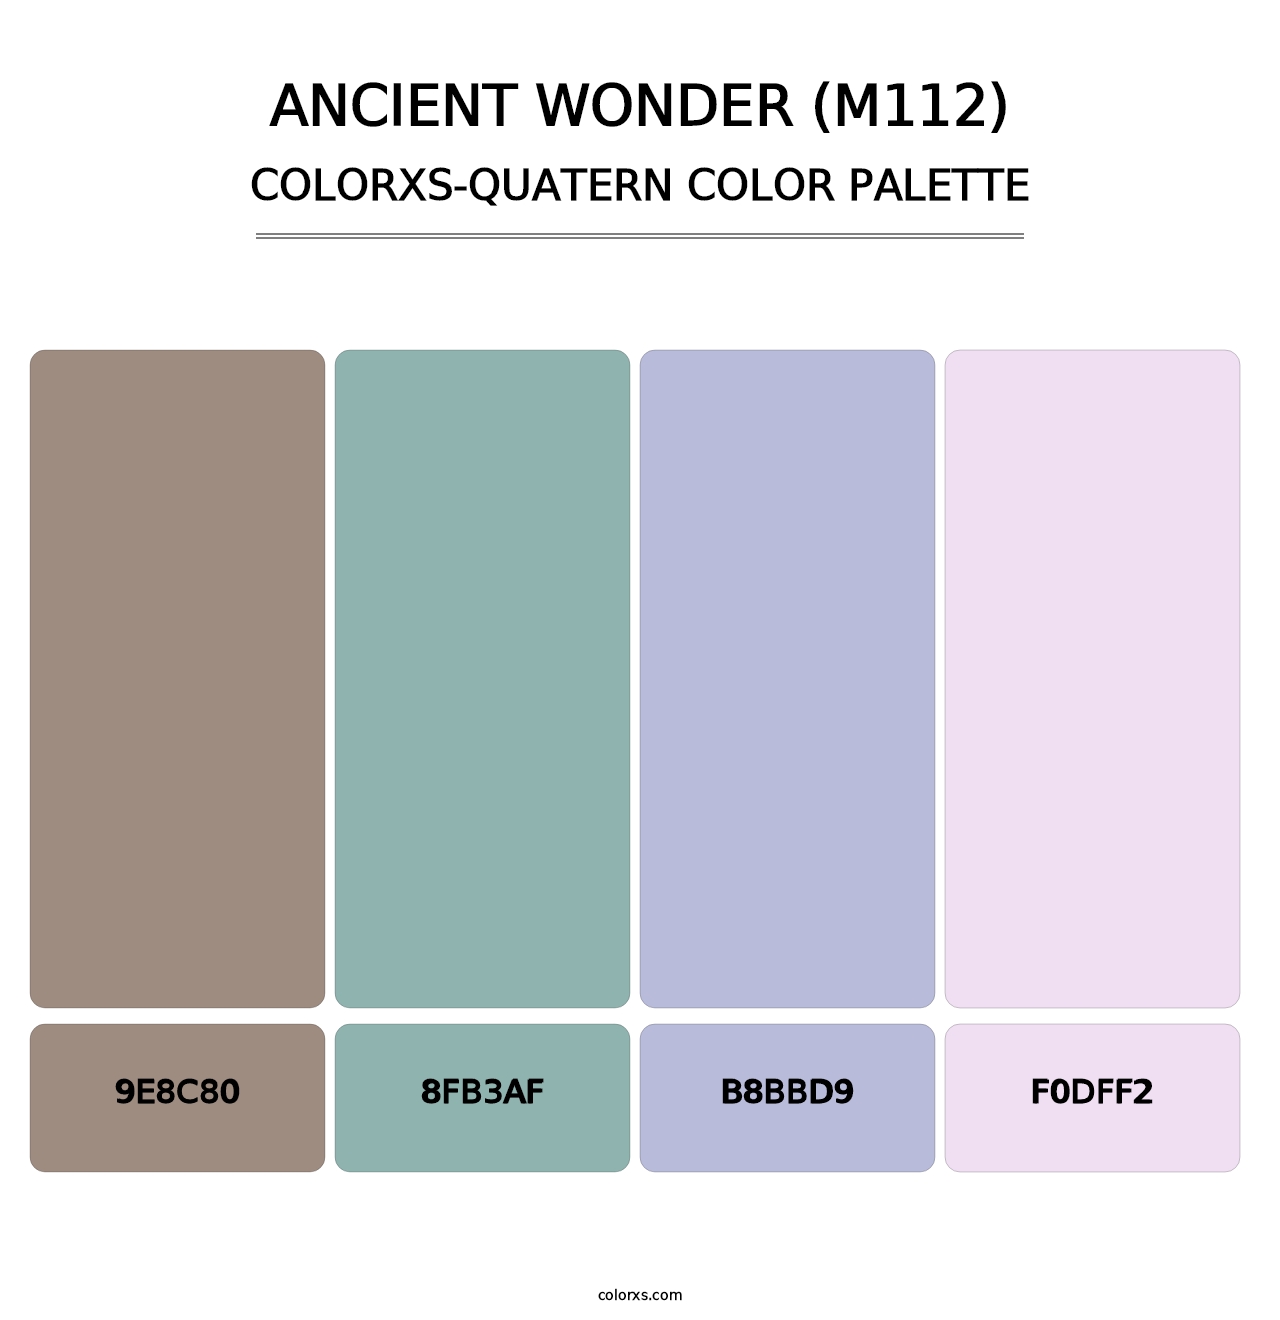 Ancient Wonder (M112) - Colorxs Quatern Palette